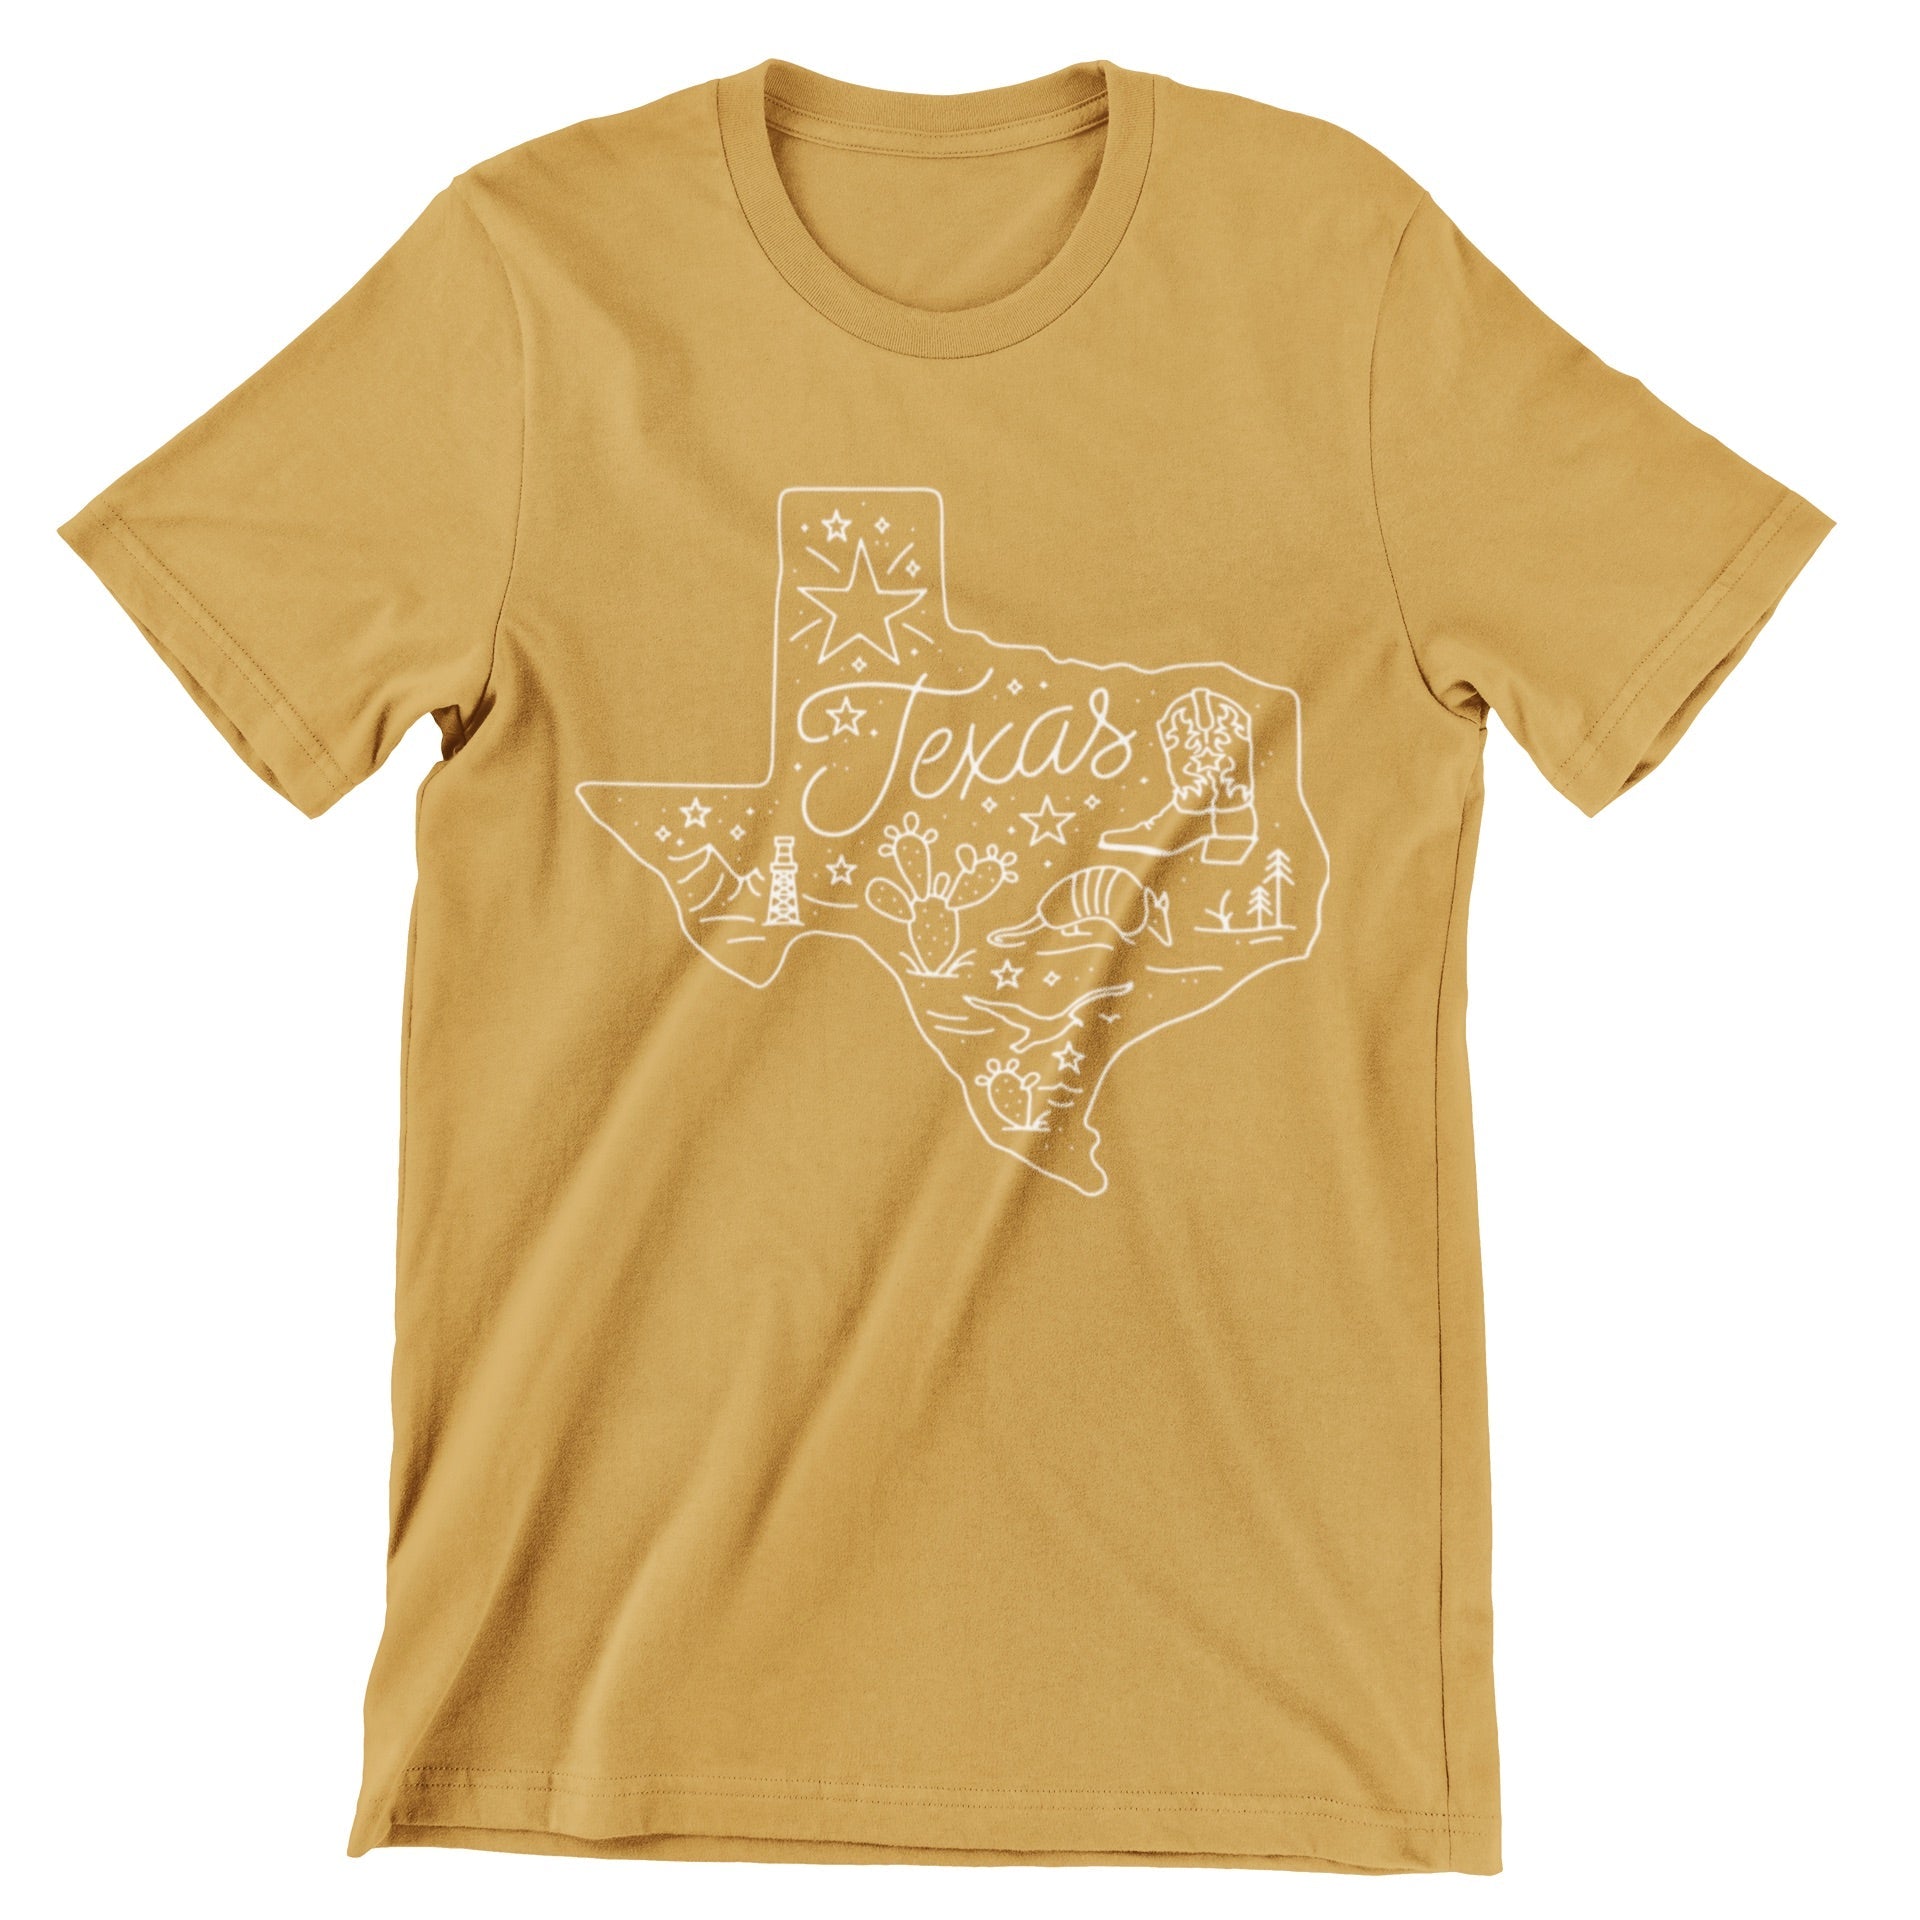 Around Texas T-Shirt